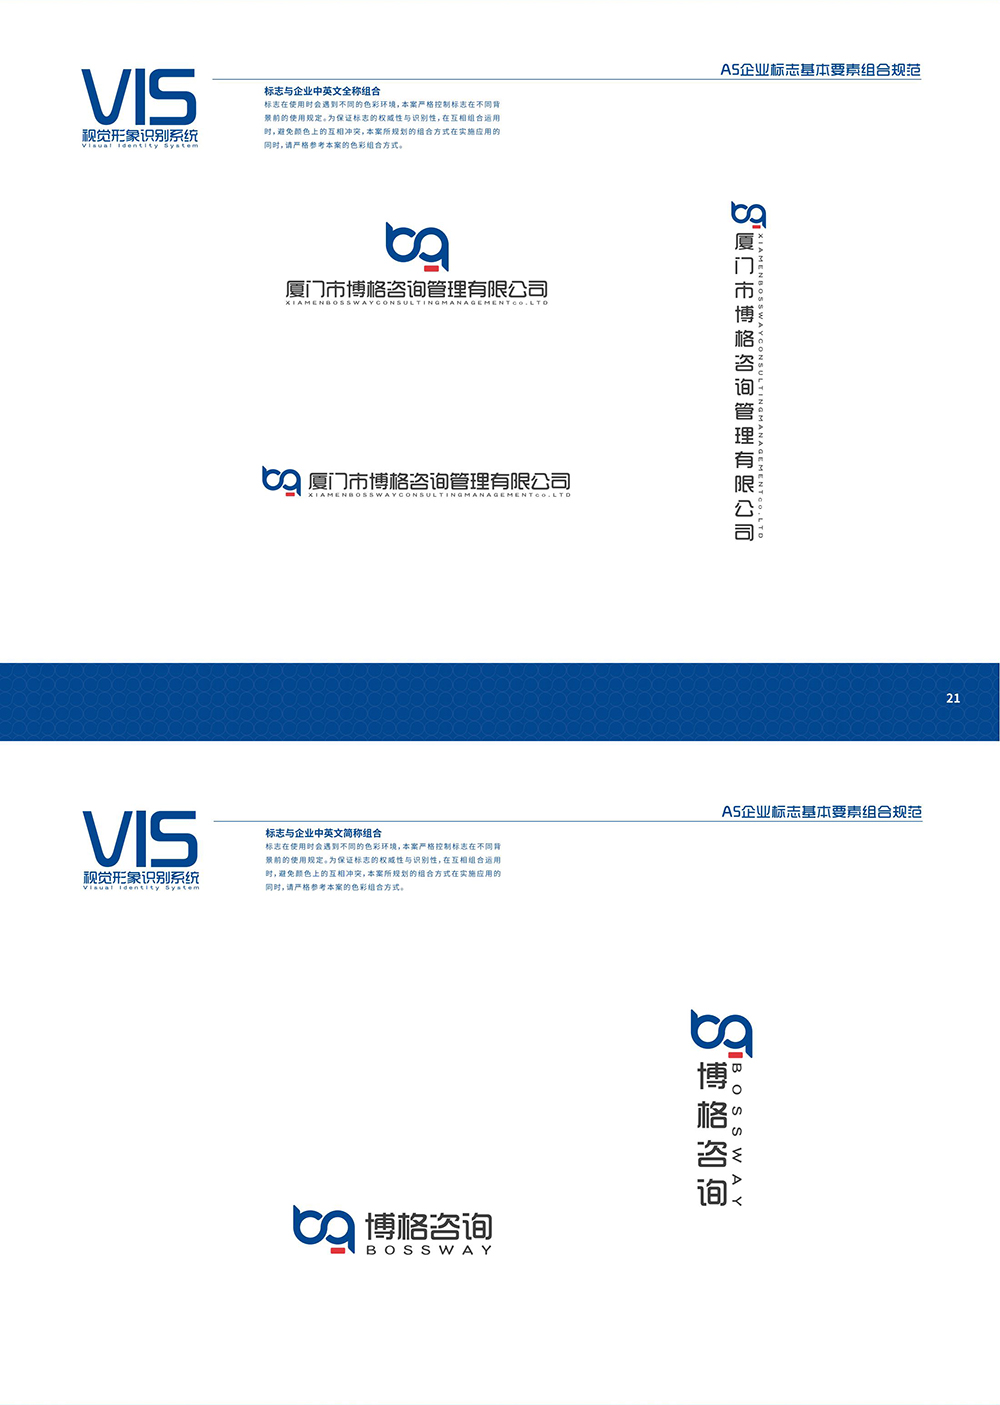 VIS视觉形象系统_01_03.jpg